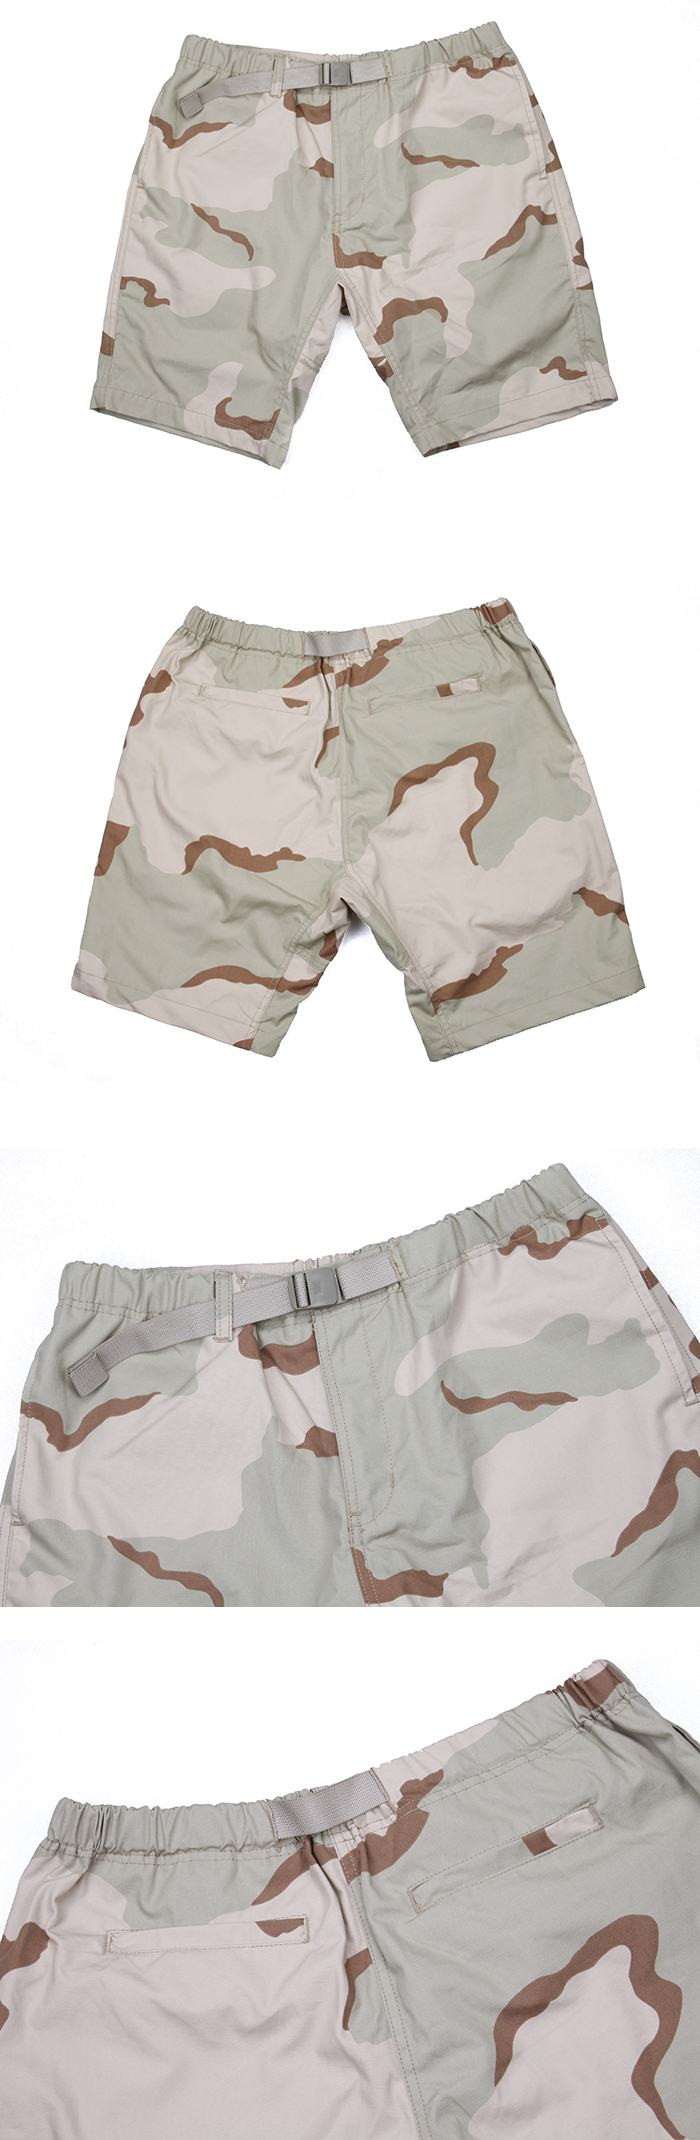 TMC OC3 Short Pants (3 Color Desert)